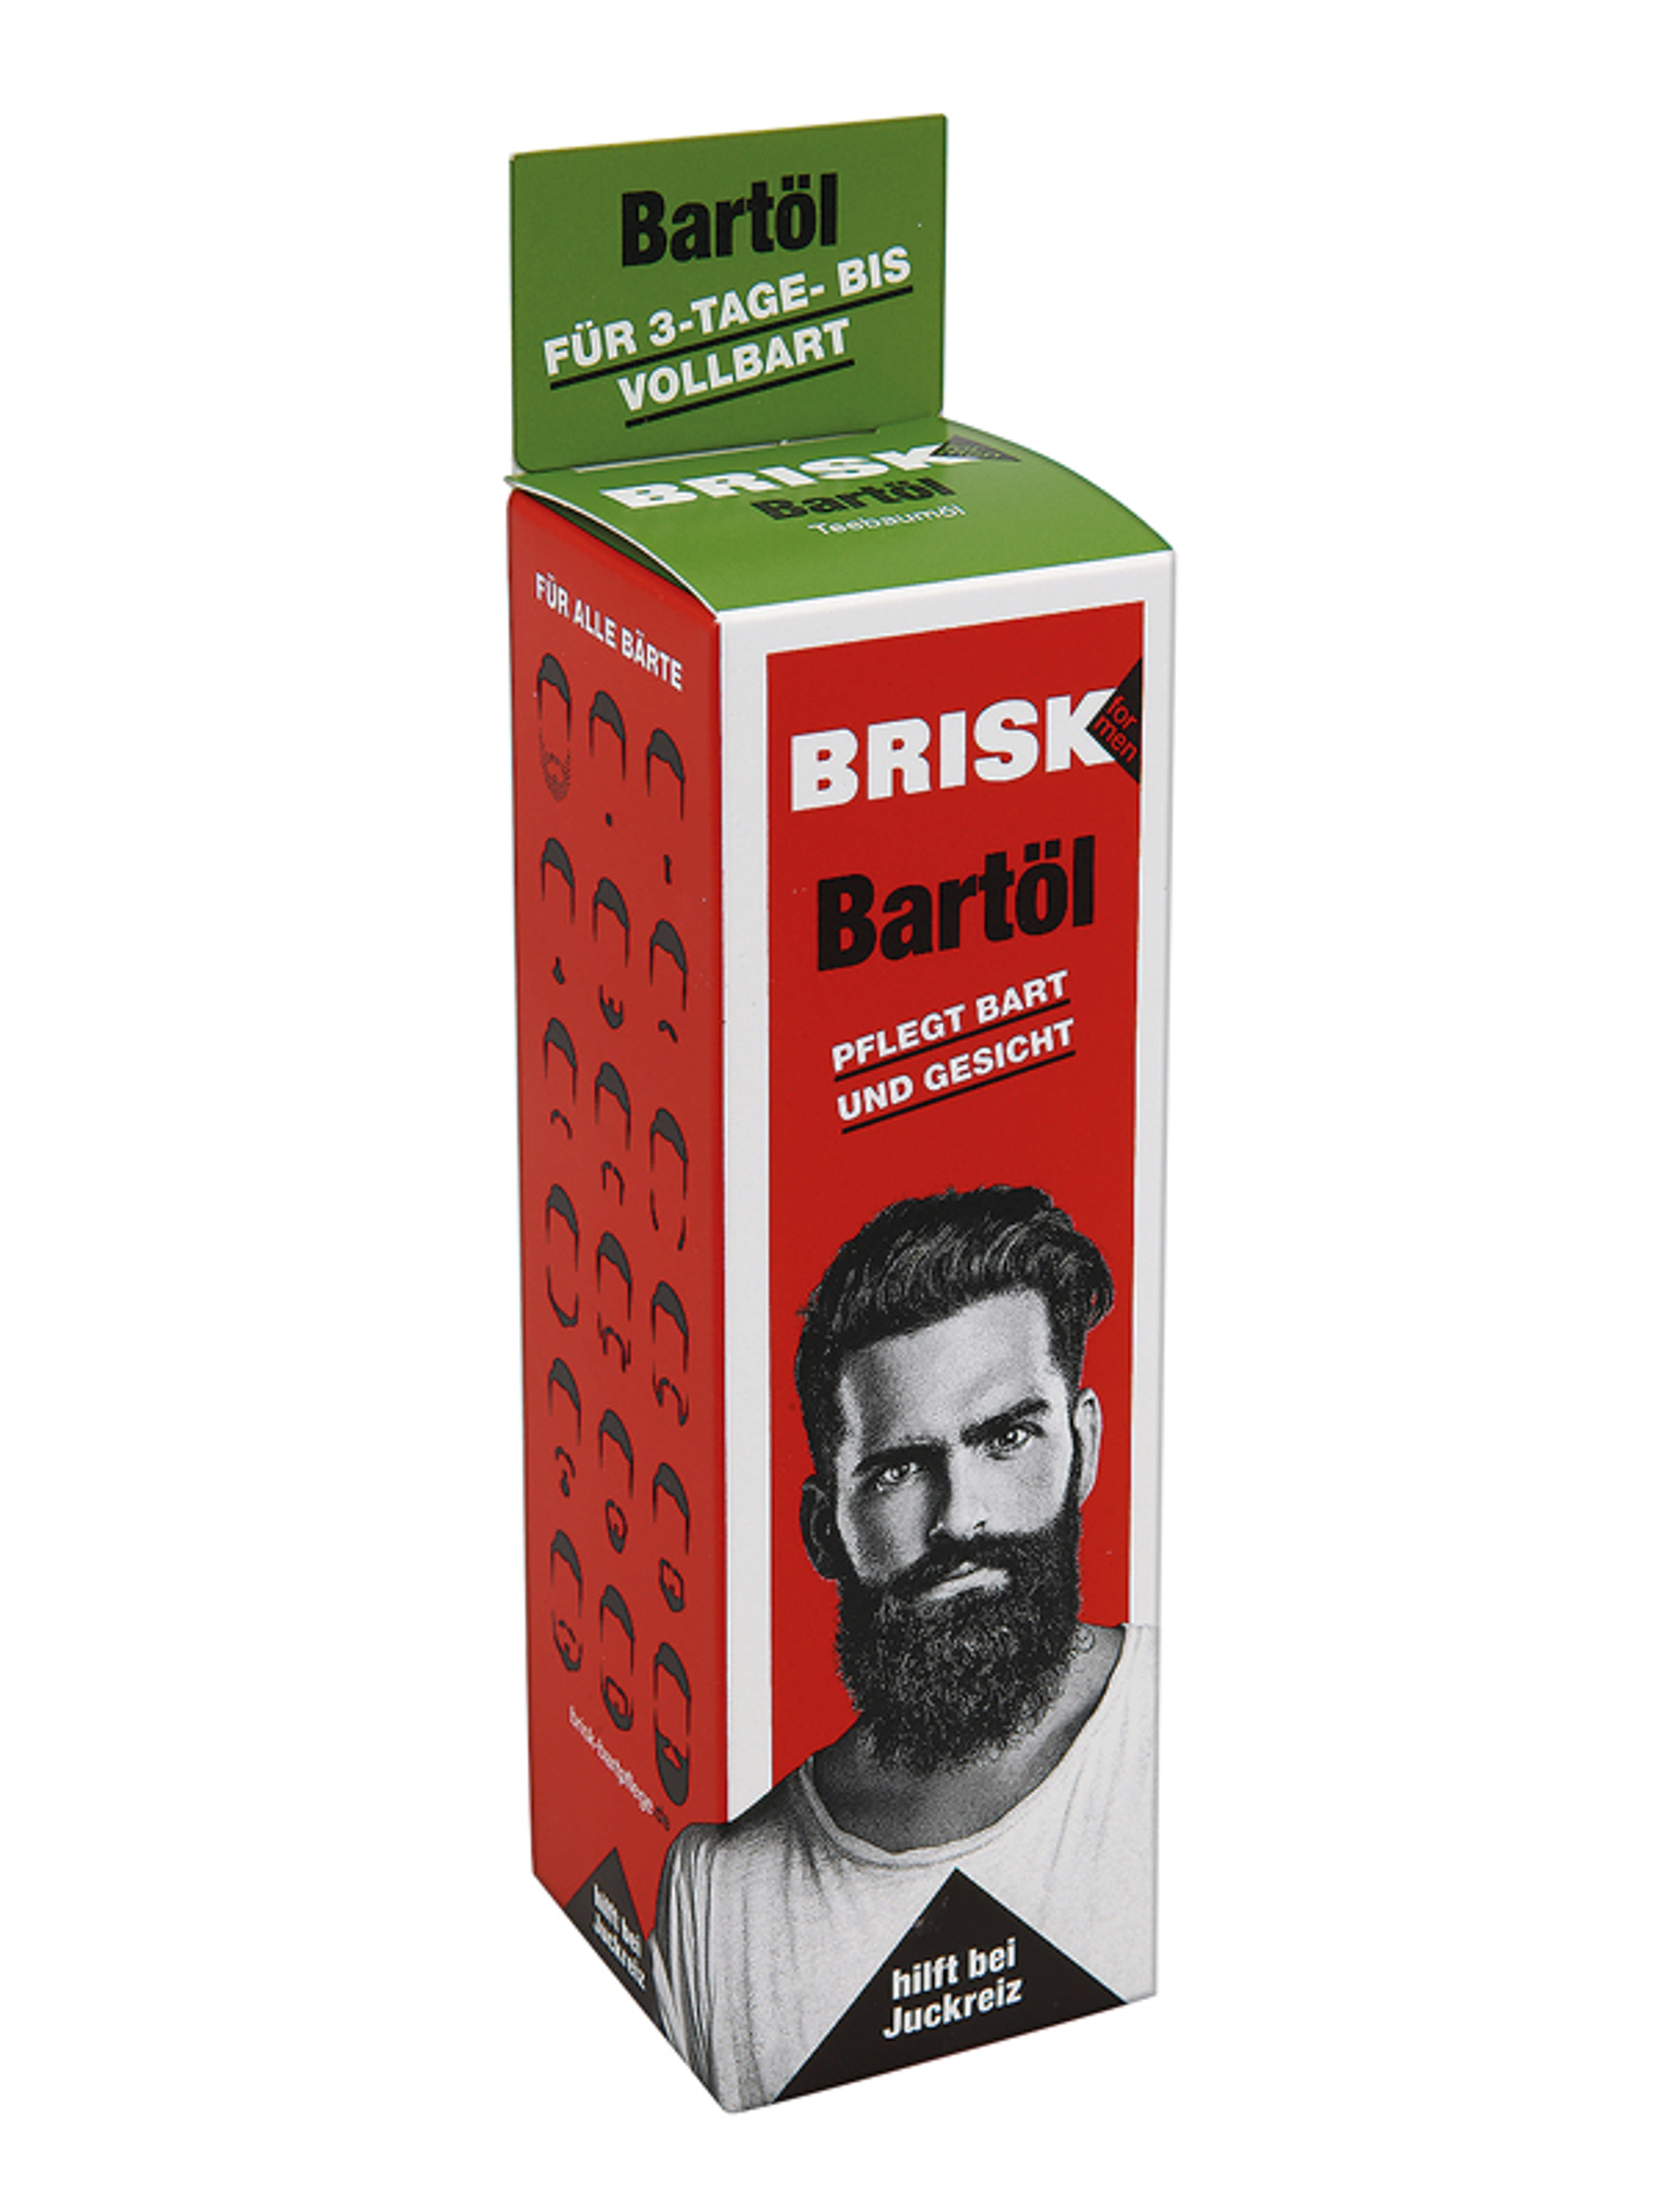 Brisk szakállolaj - 50 ml